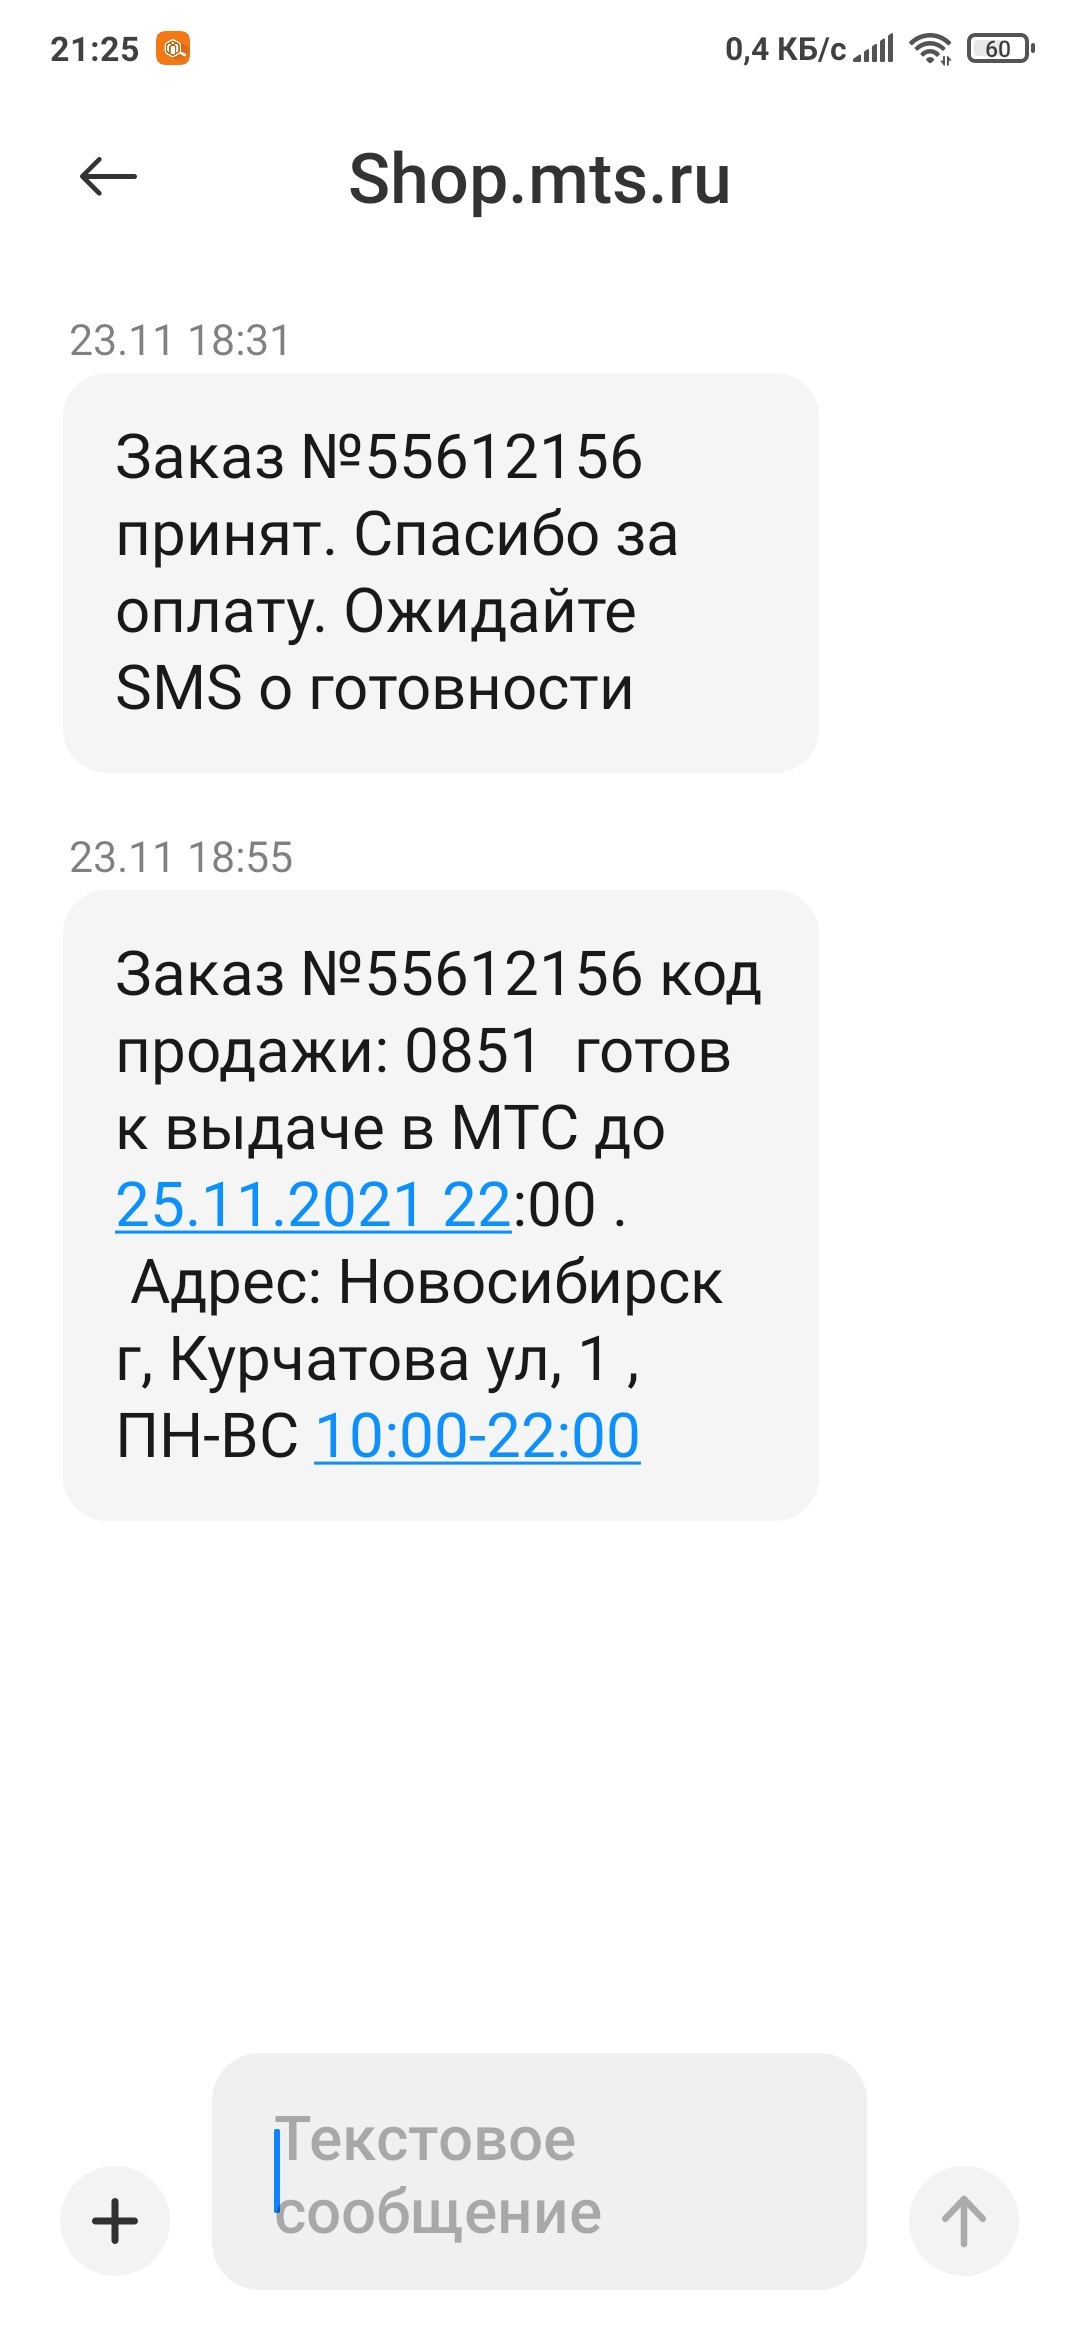 Мтс Магазин Новосибирск Адреса